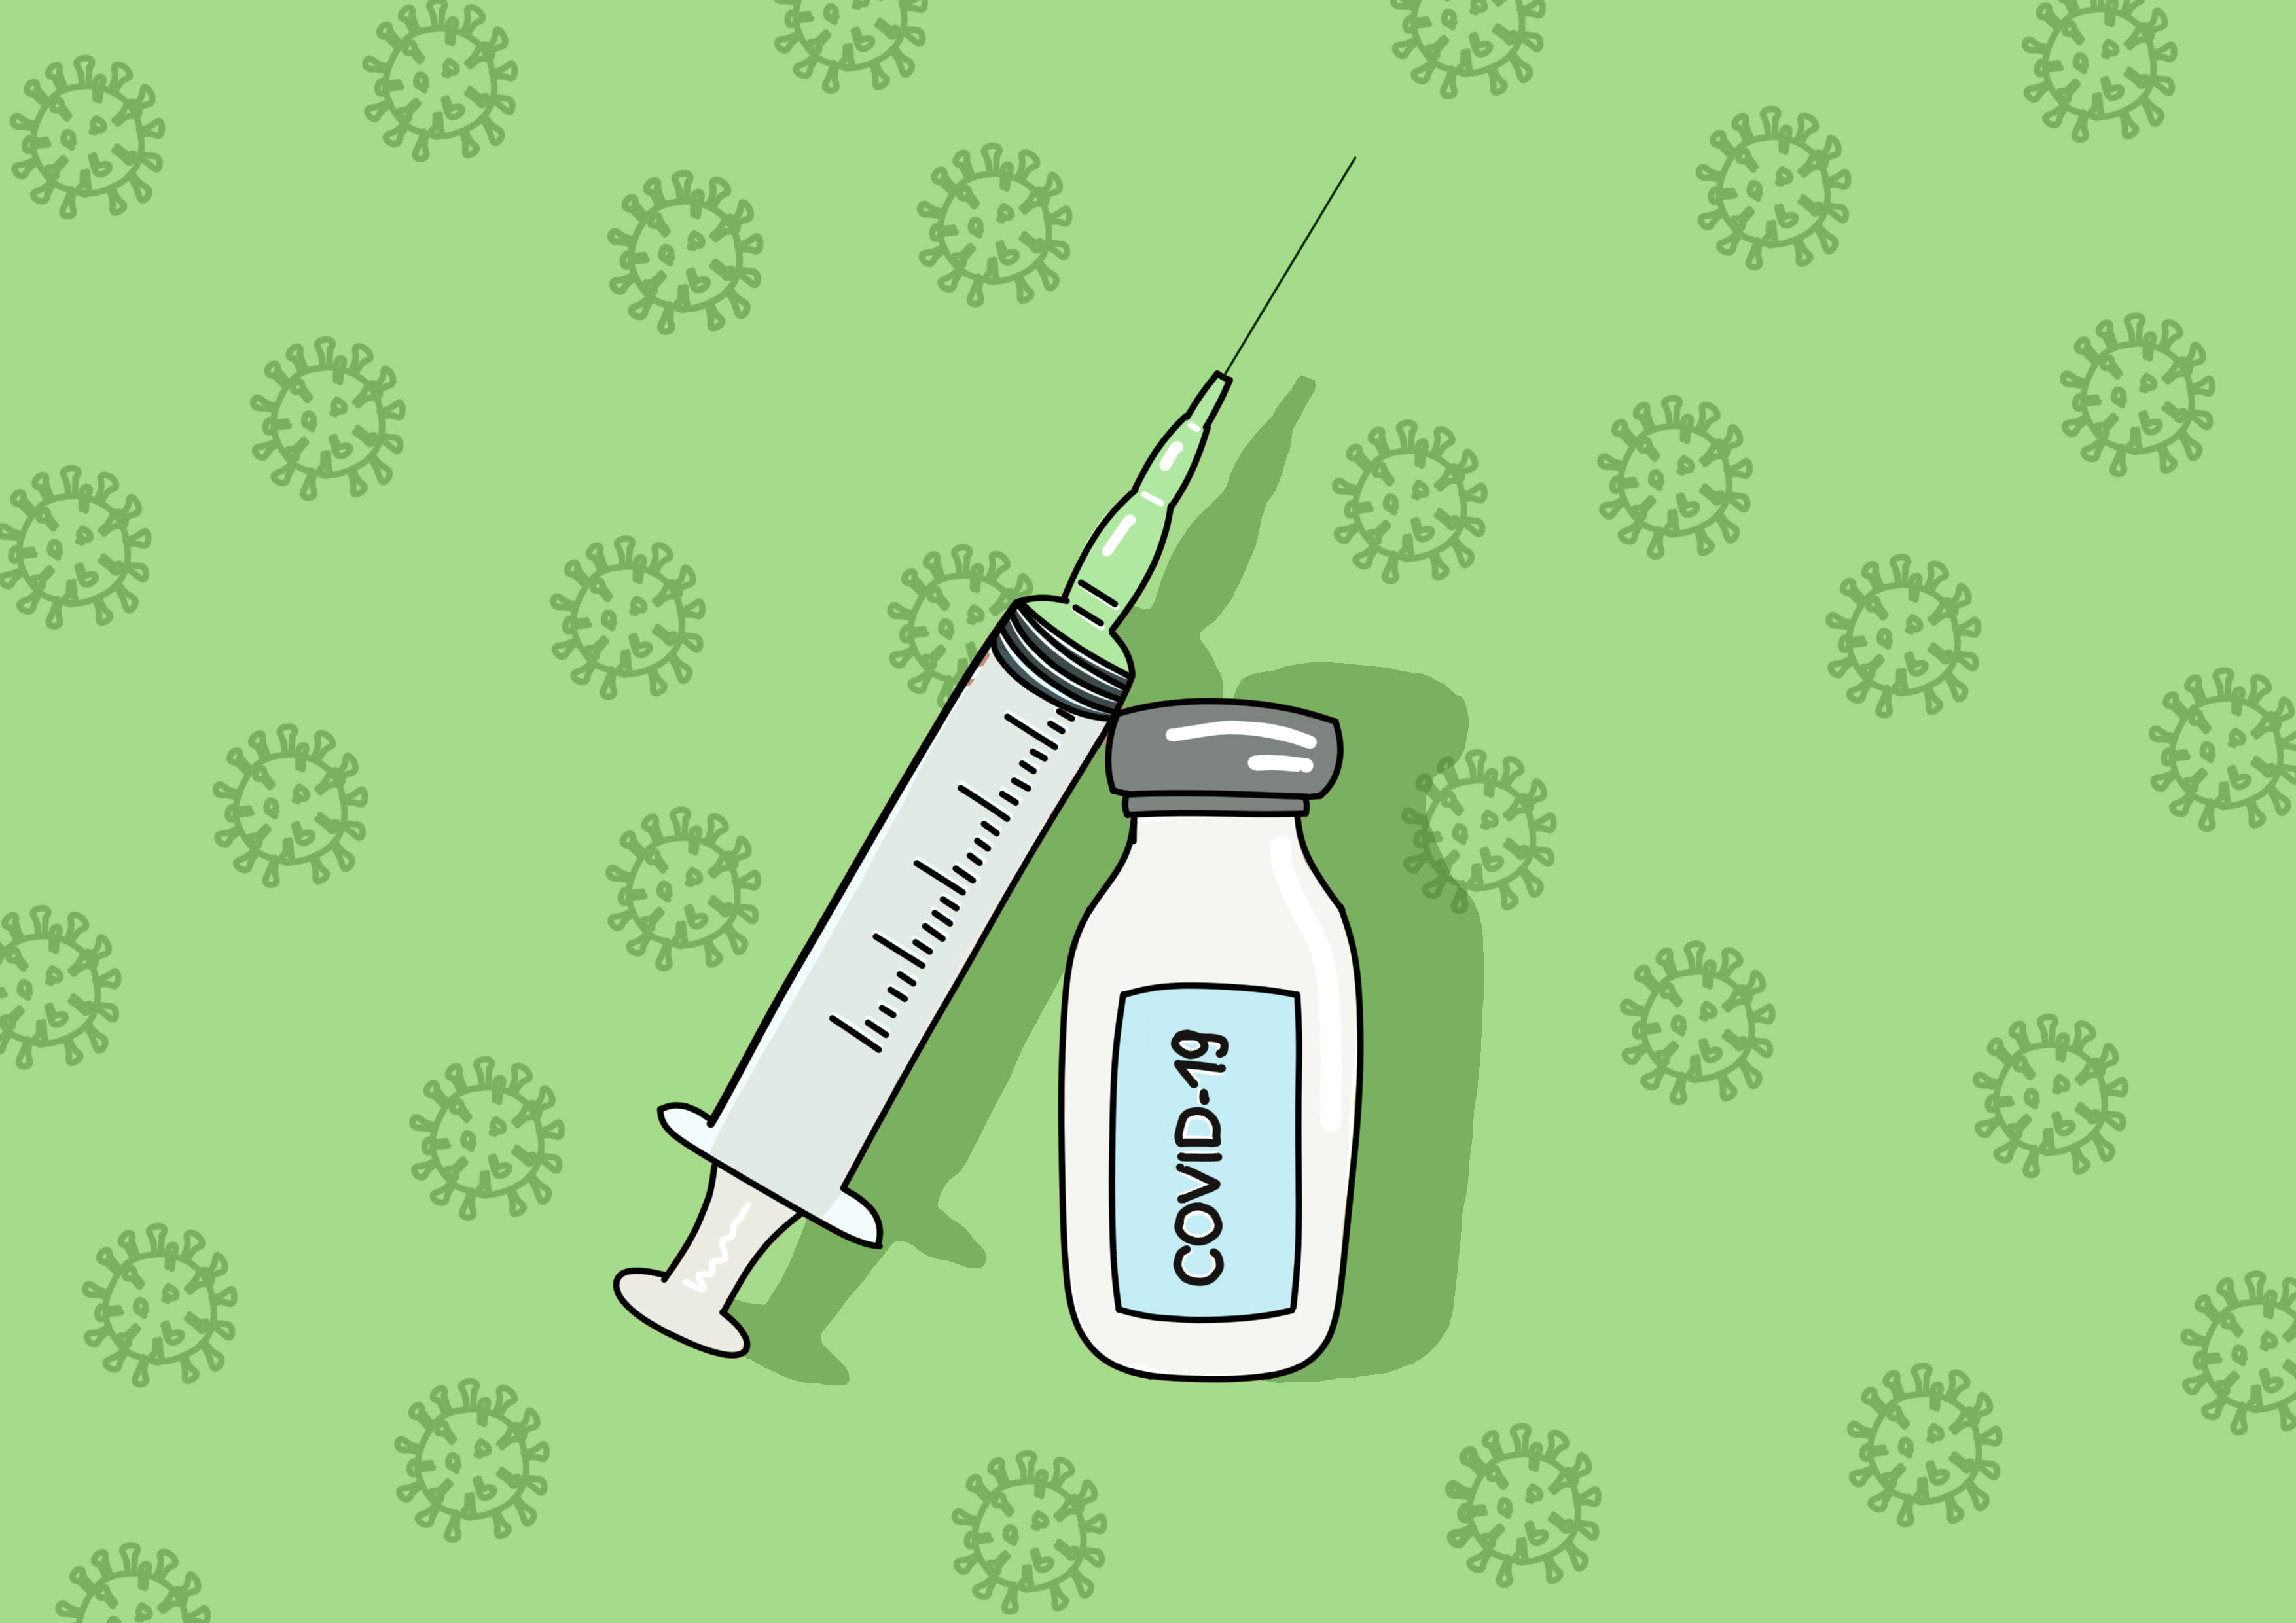 Ampola de vacina e seringa com o escrito "covid-19" sobre fundo verde. Ilustração.